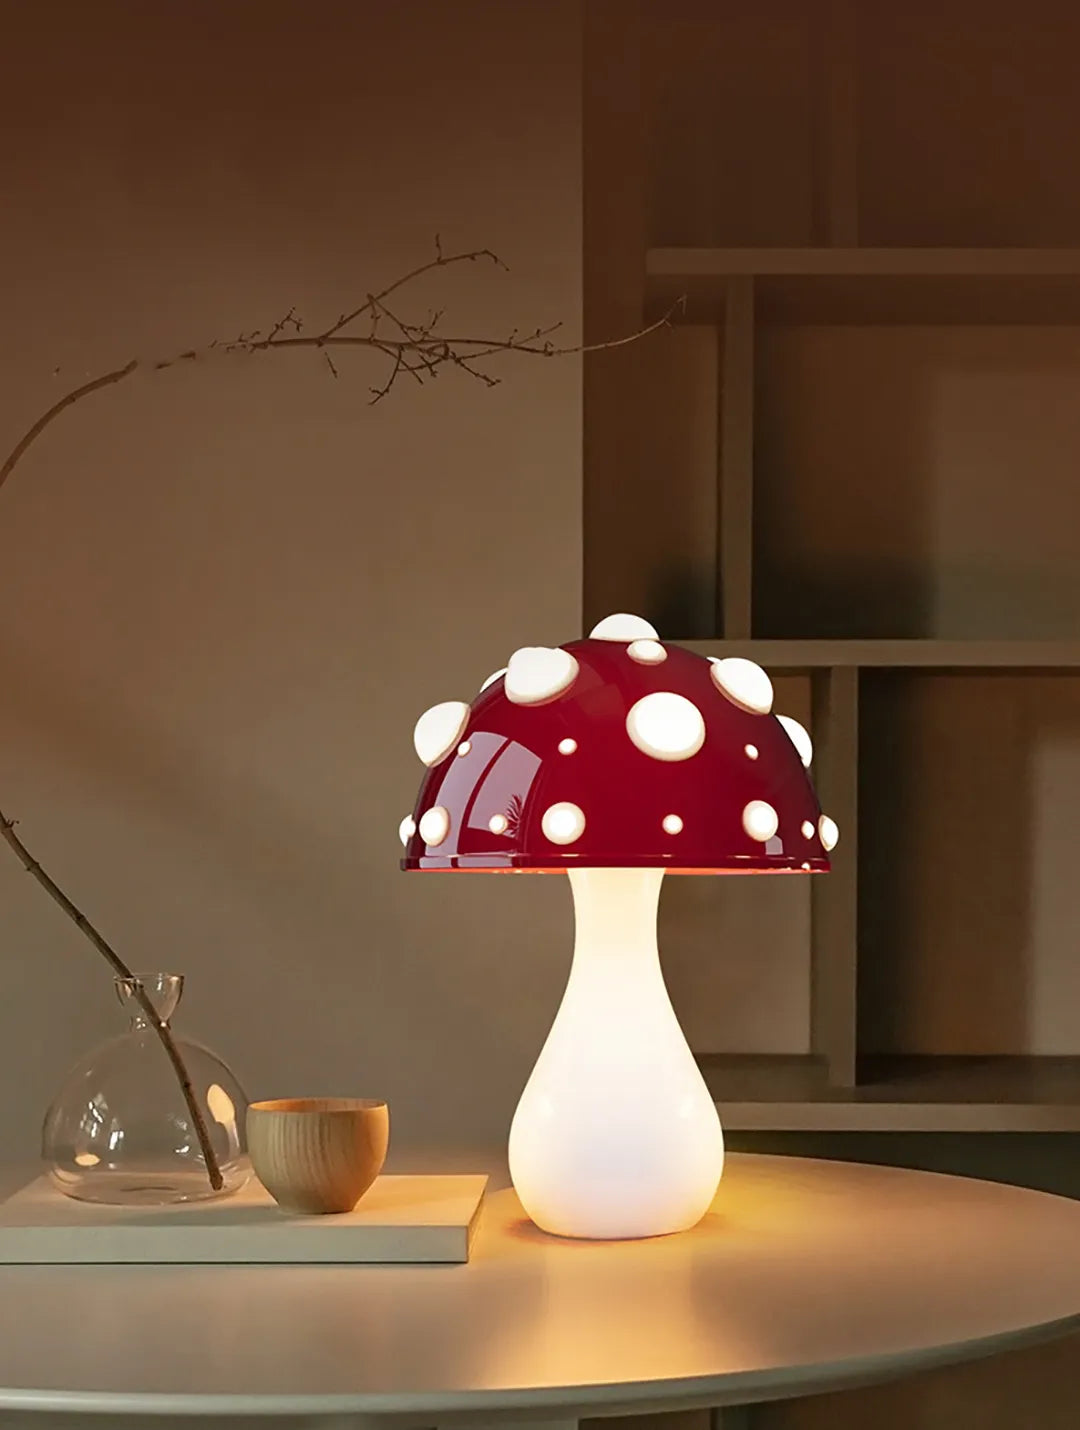 LED Mushroom Table Lamp Study Night Light Gifts